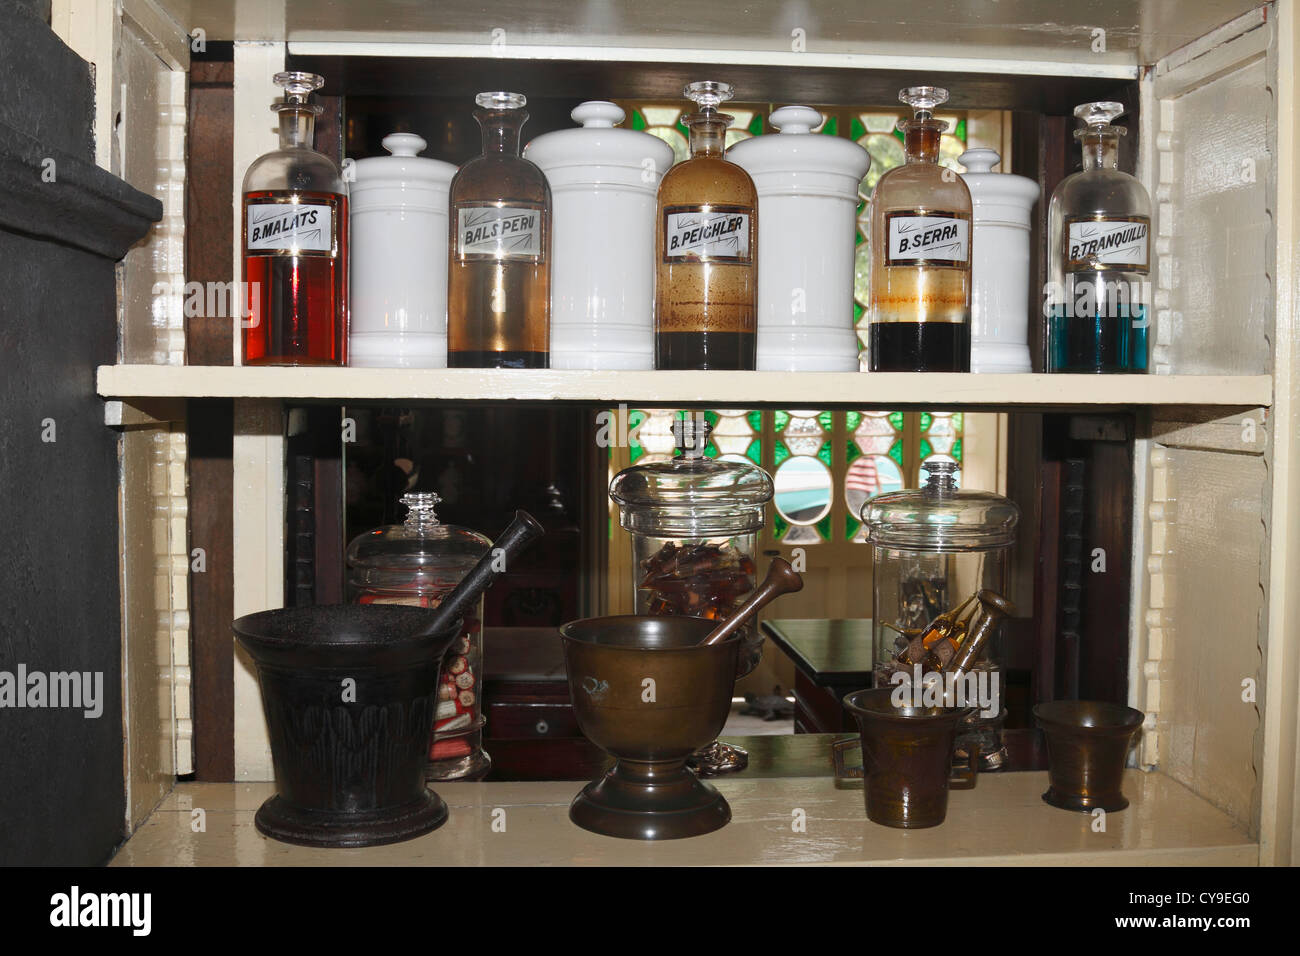 Química Farmacéutica frascos y botellas a la Botica La Francesa, fue fundado por el Dr. Ernesto Triolet. Matanzas, Cuba Foto de stock